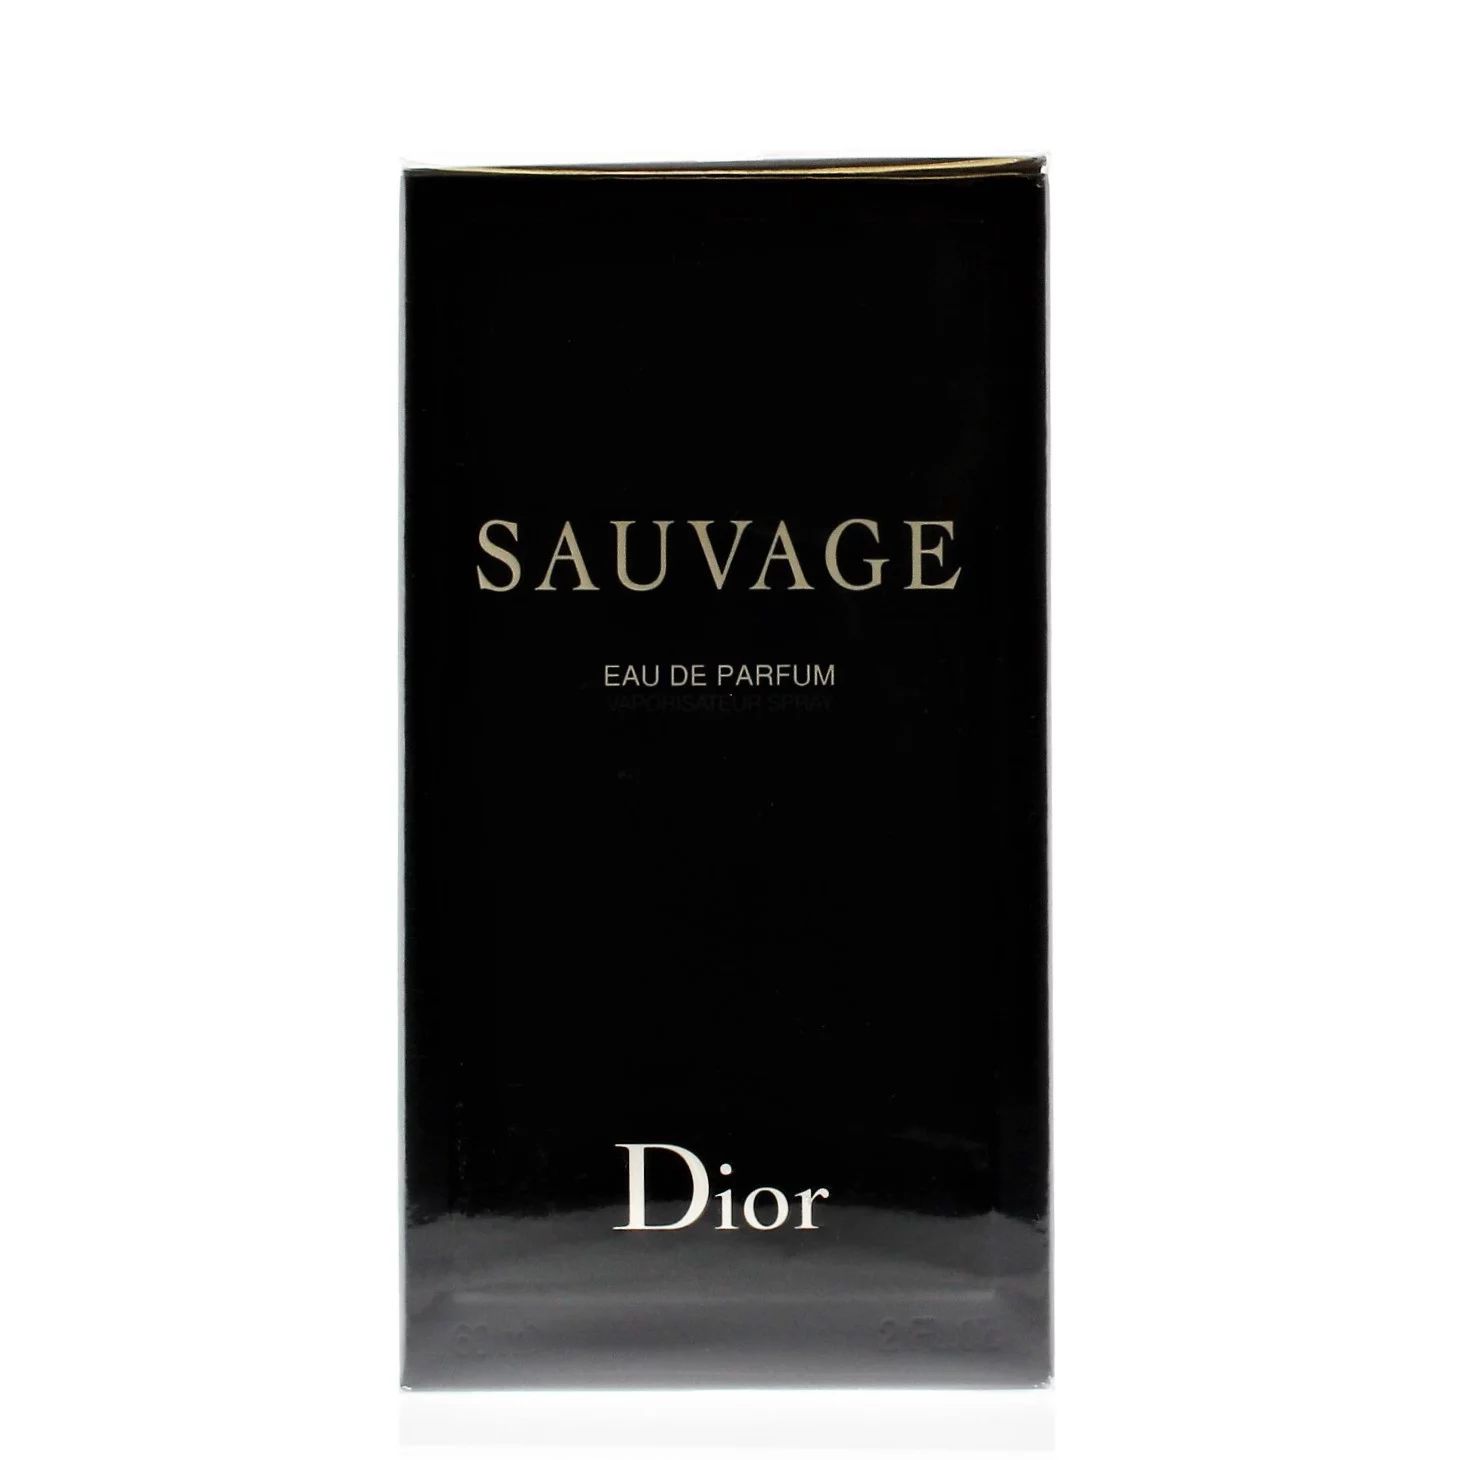 Dior Sauvage Eau de Parfum, Cologne For Men, 2 oz | Walmart (US)